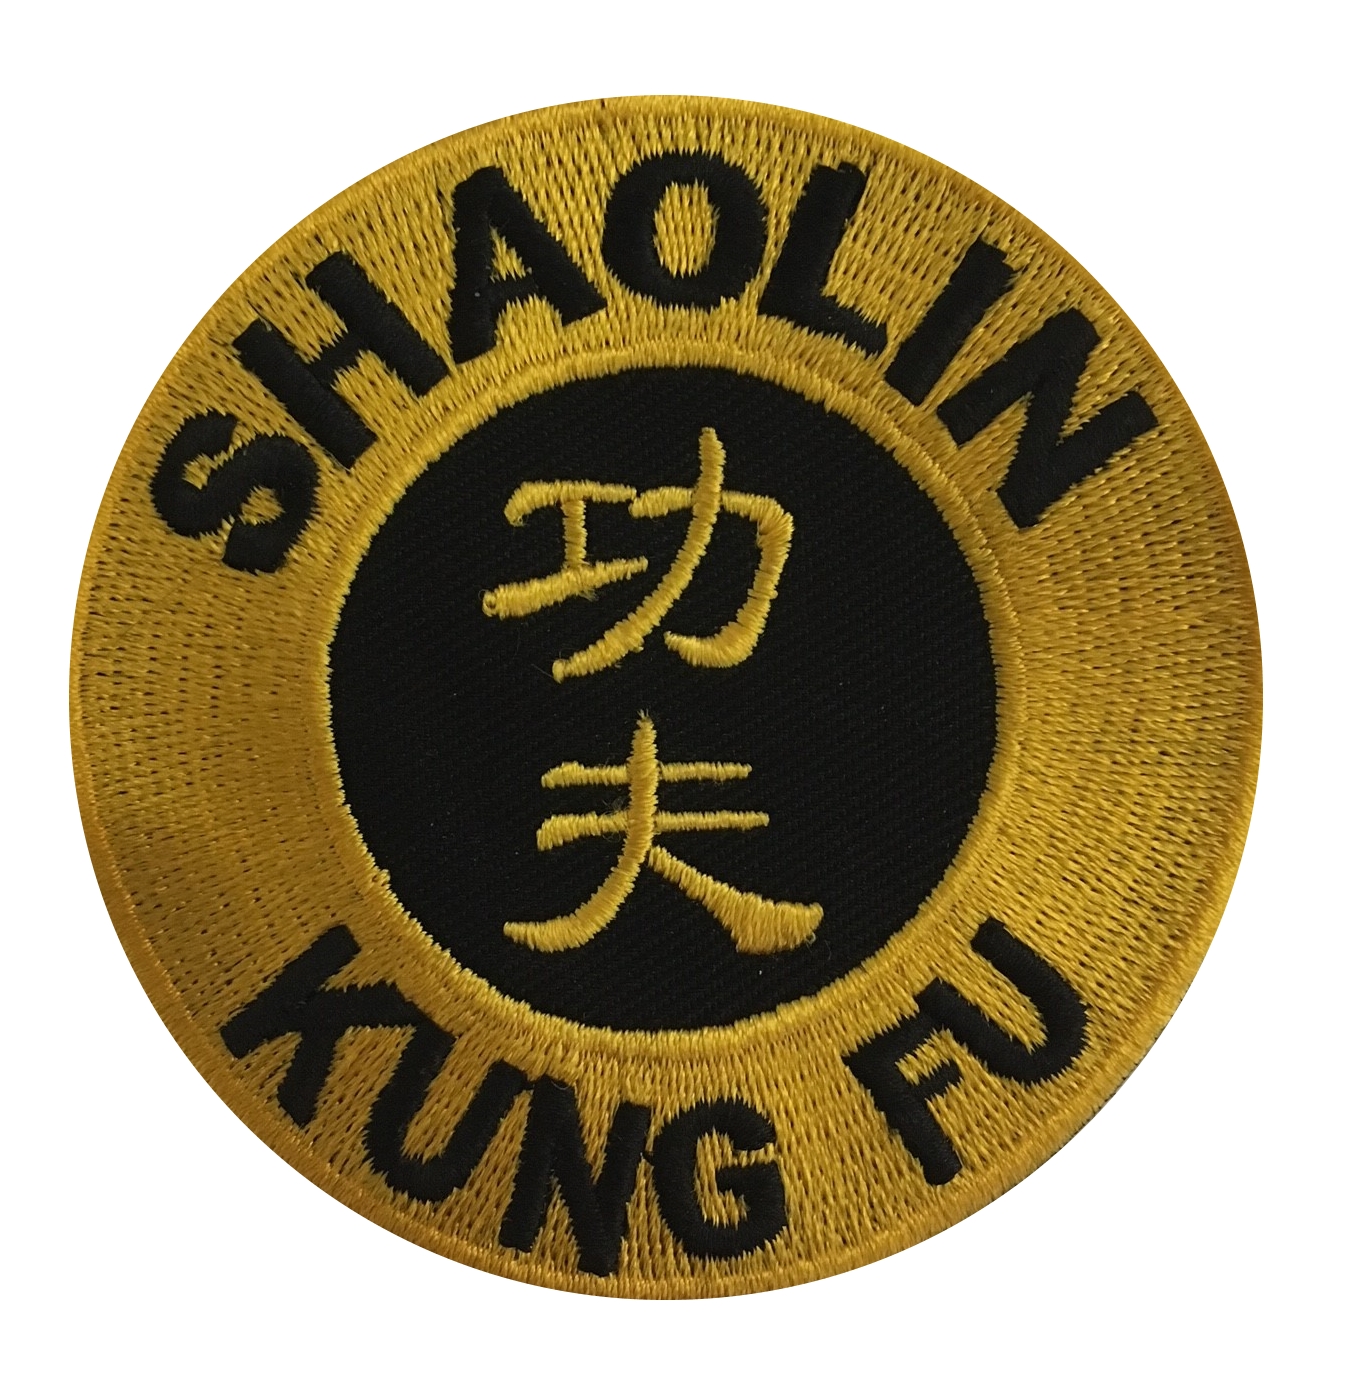 Aufnäher Shaolin Kung-Fu 8 cm rund, schwarz-gold